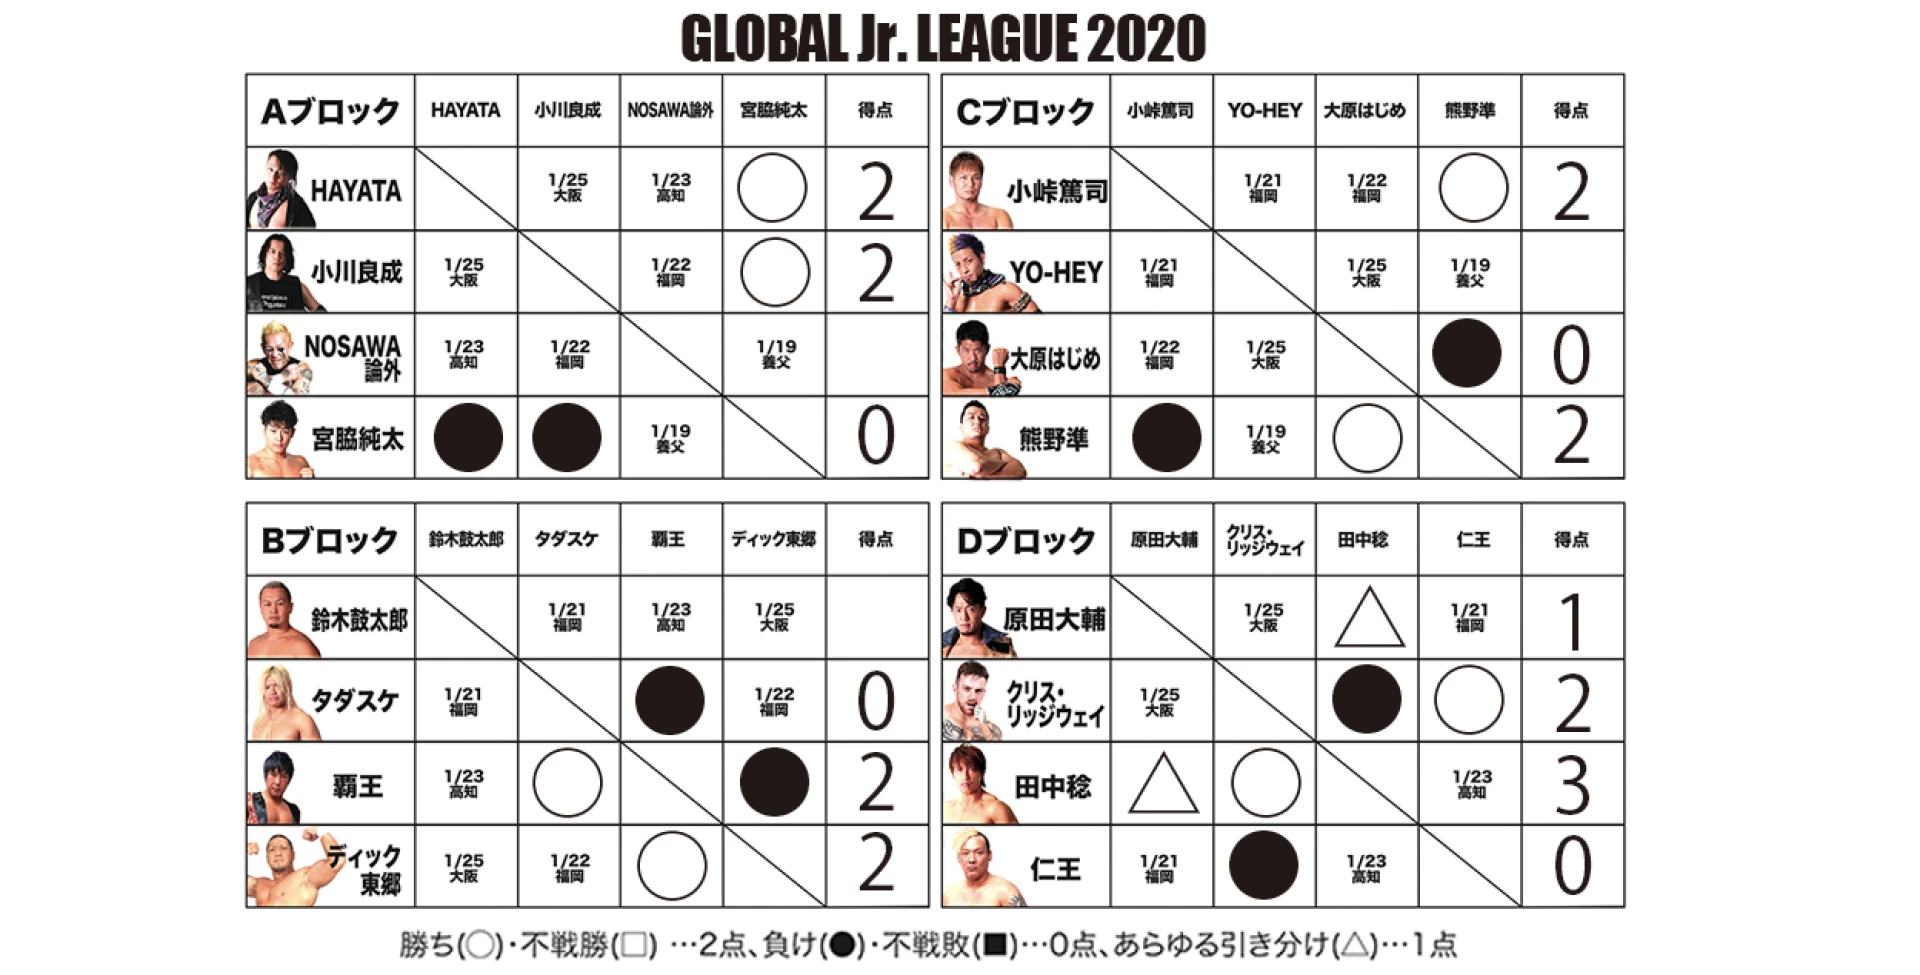 【1･12浜松終了時点】GLOBAL Jr. LEAGUE 2020 得点表